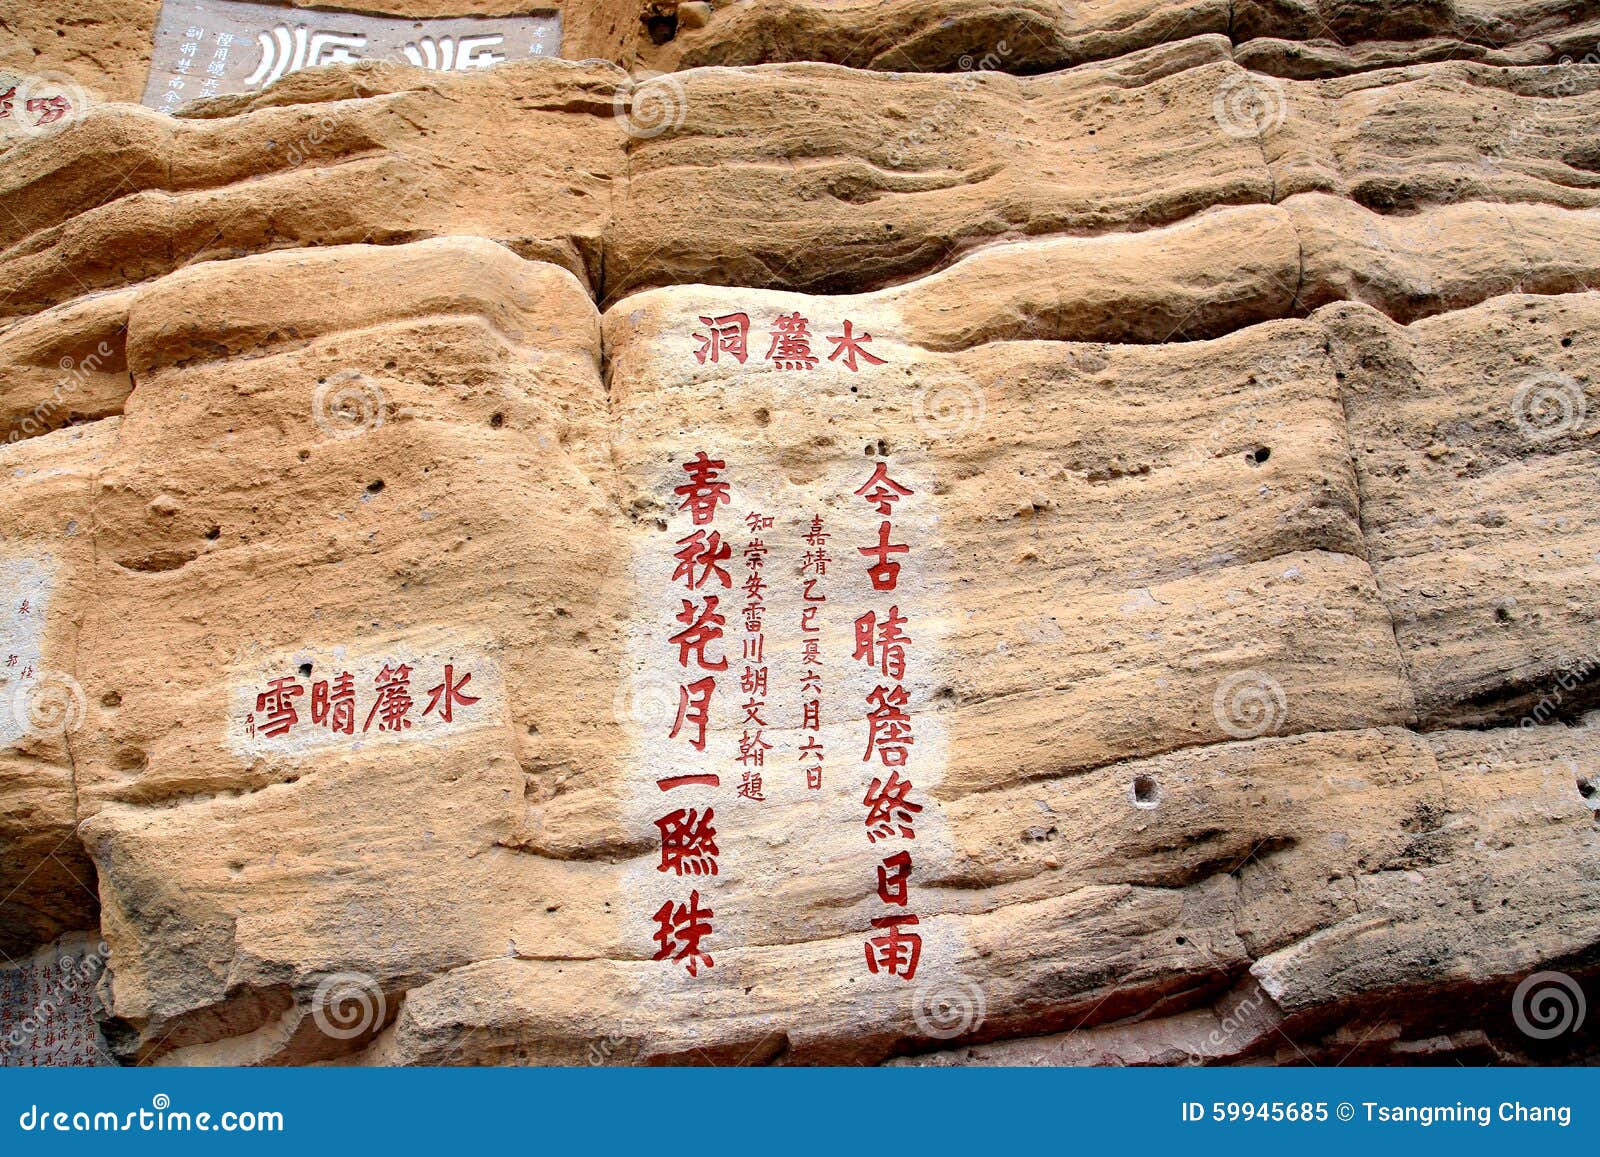 wuyi mountain , the danxia geomorphology scenery in china